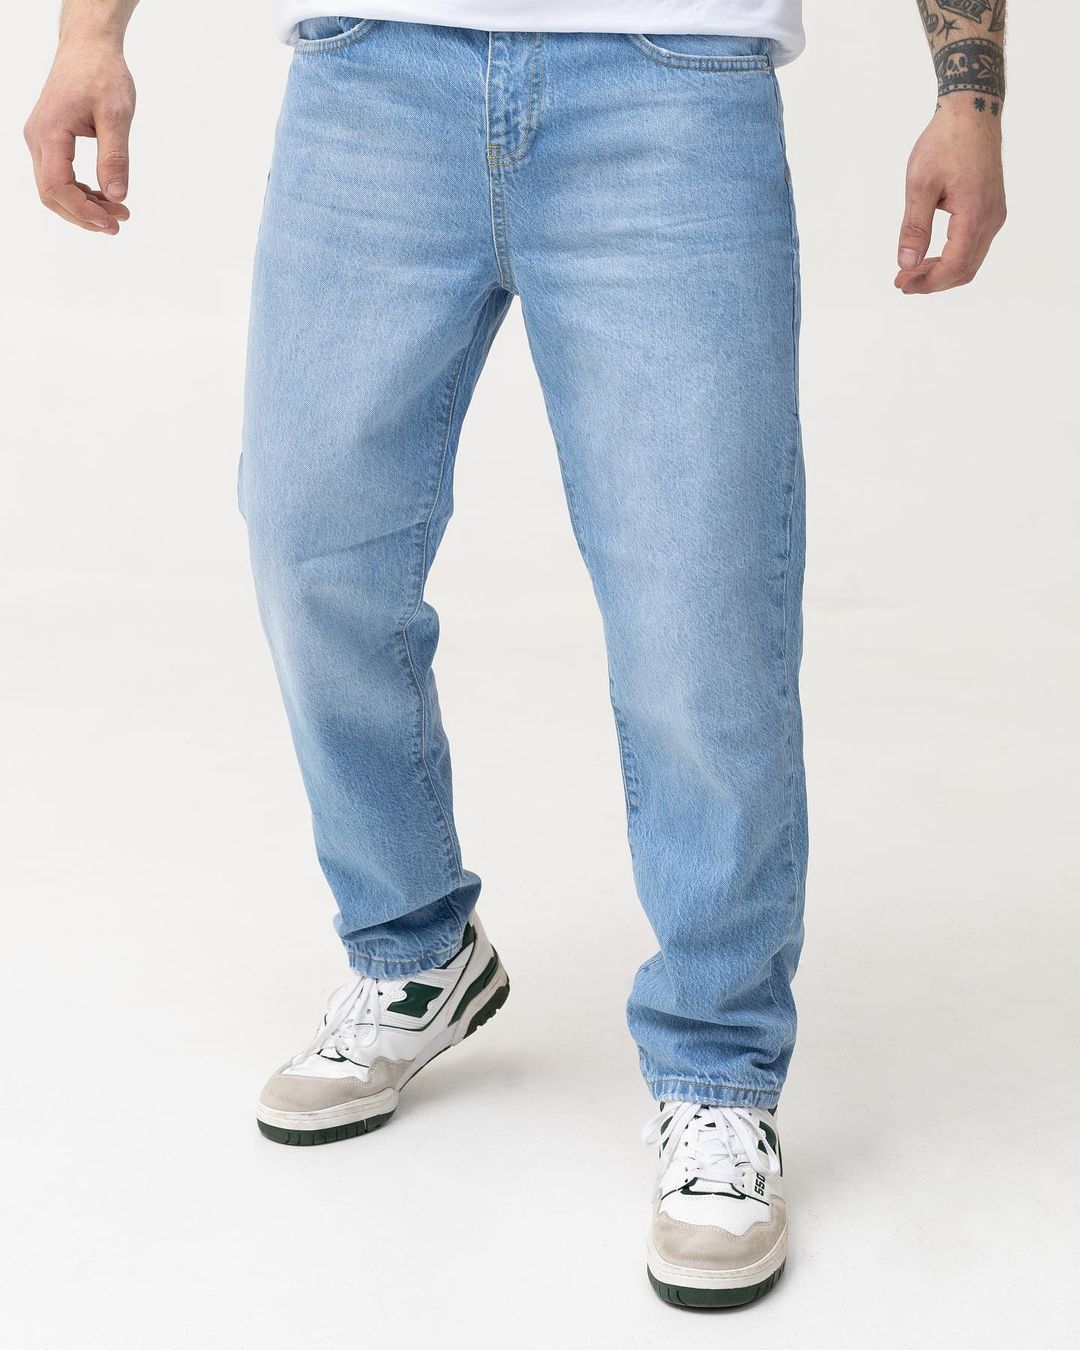 Чоловічі світлі блакитні джинси BEZET базові - Фото 1